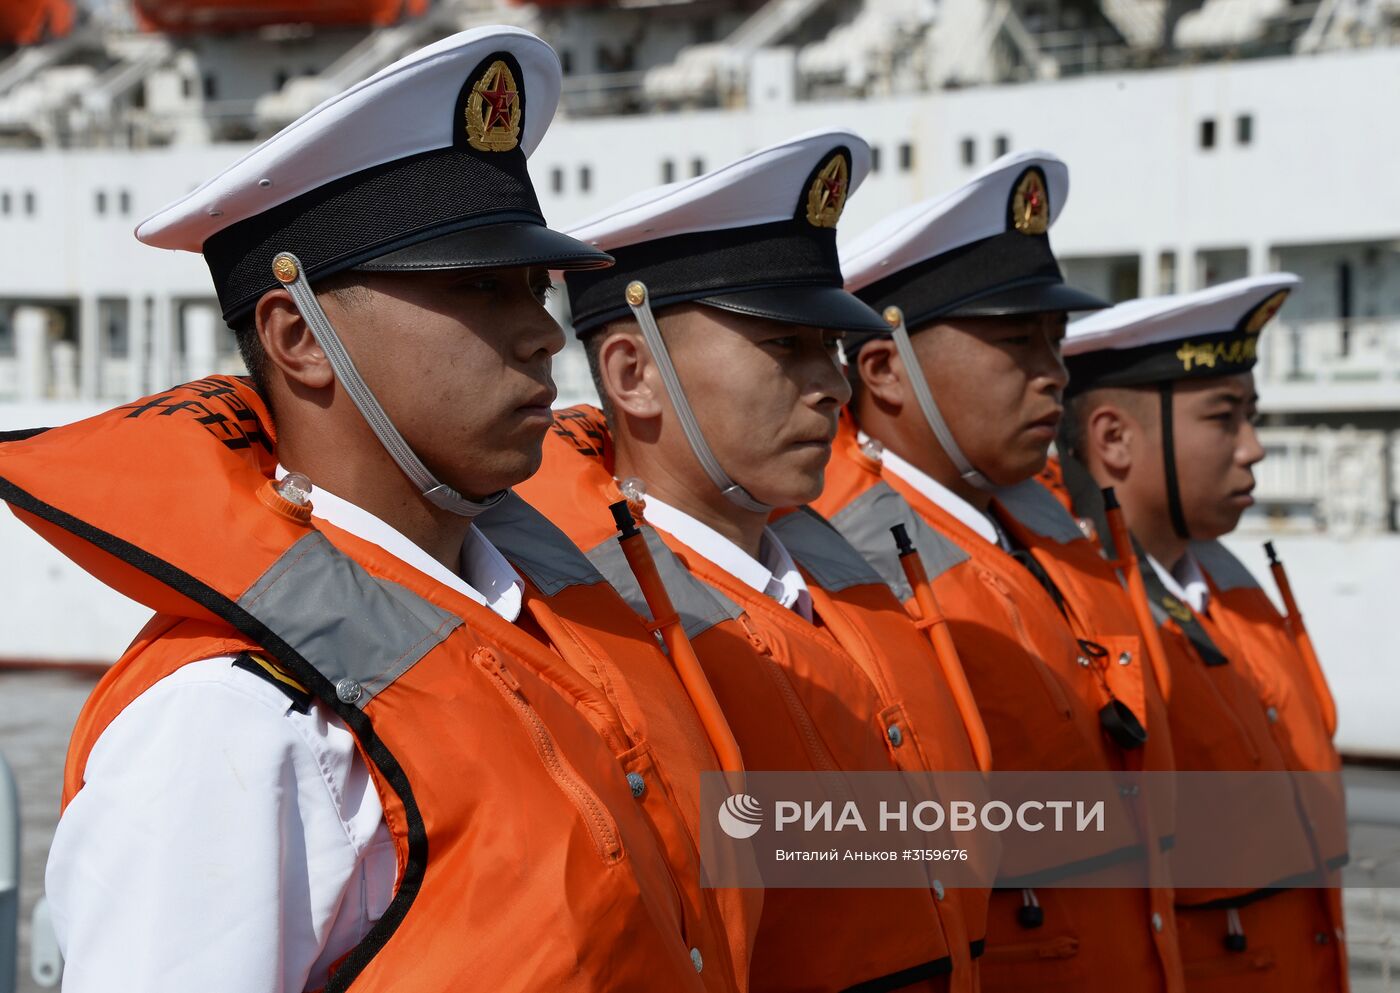 Прибытие китайского корвета "Хуангши" во Владивосток"